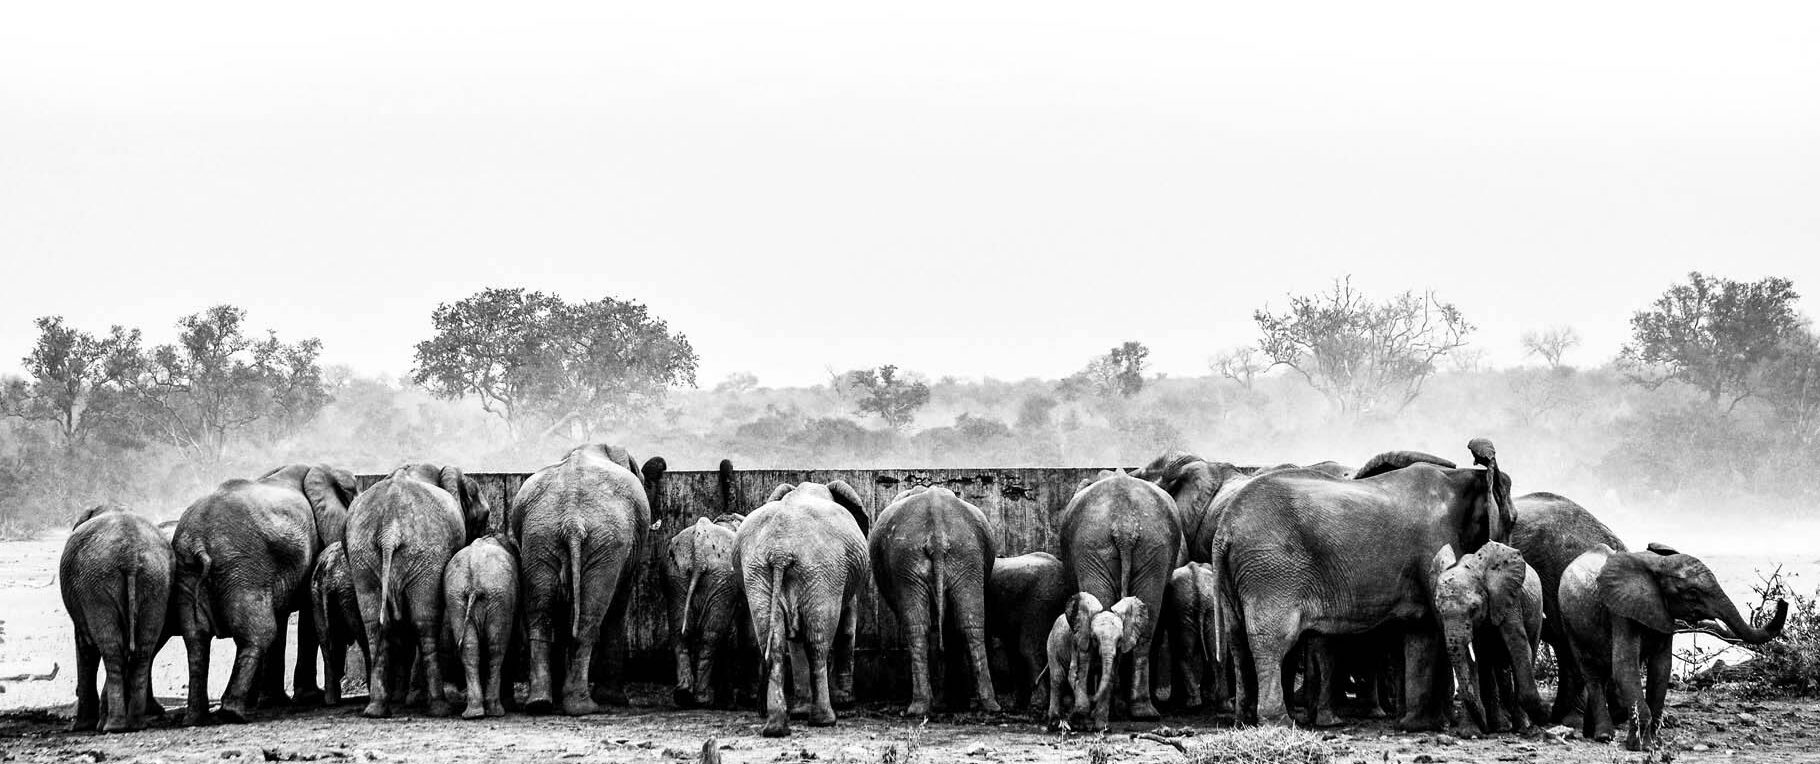 Elephants Kruger National Park